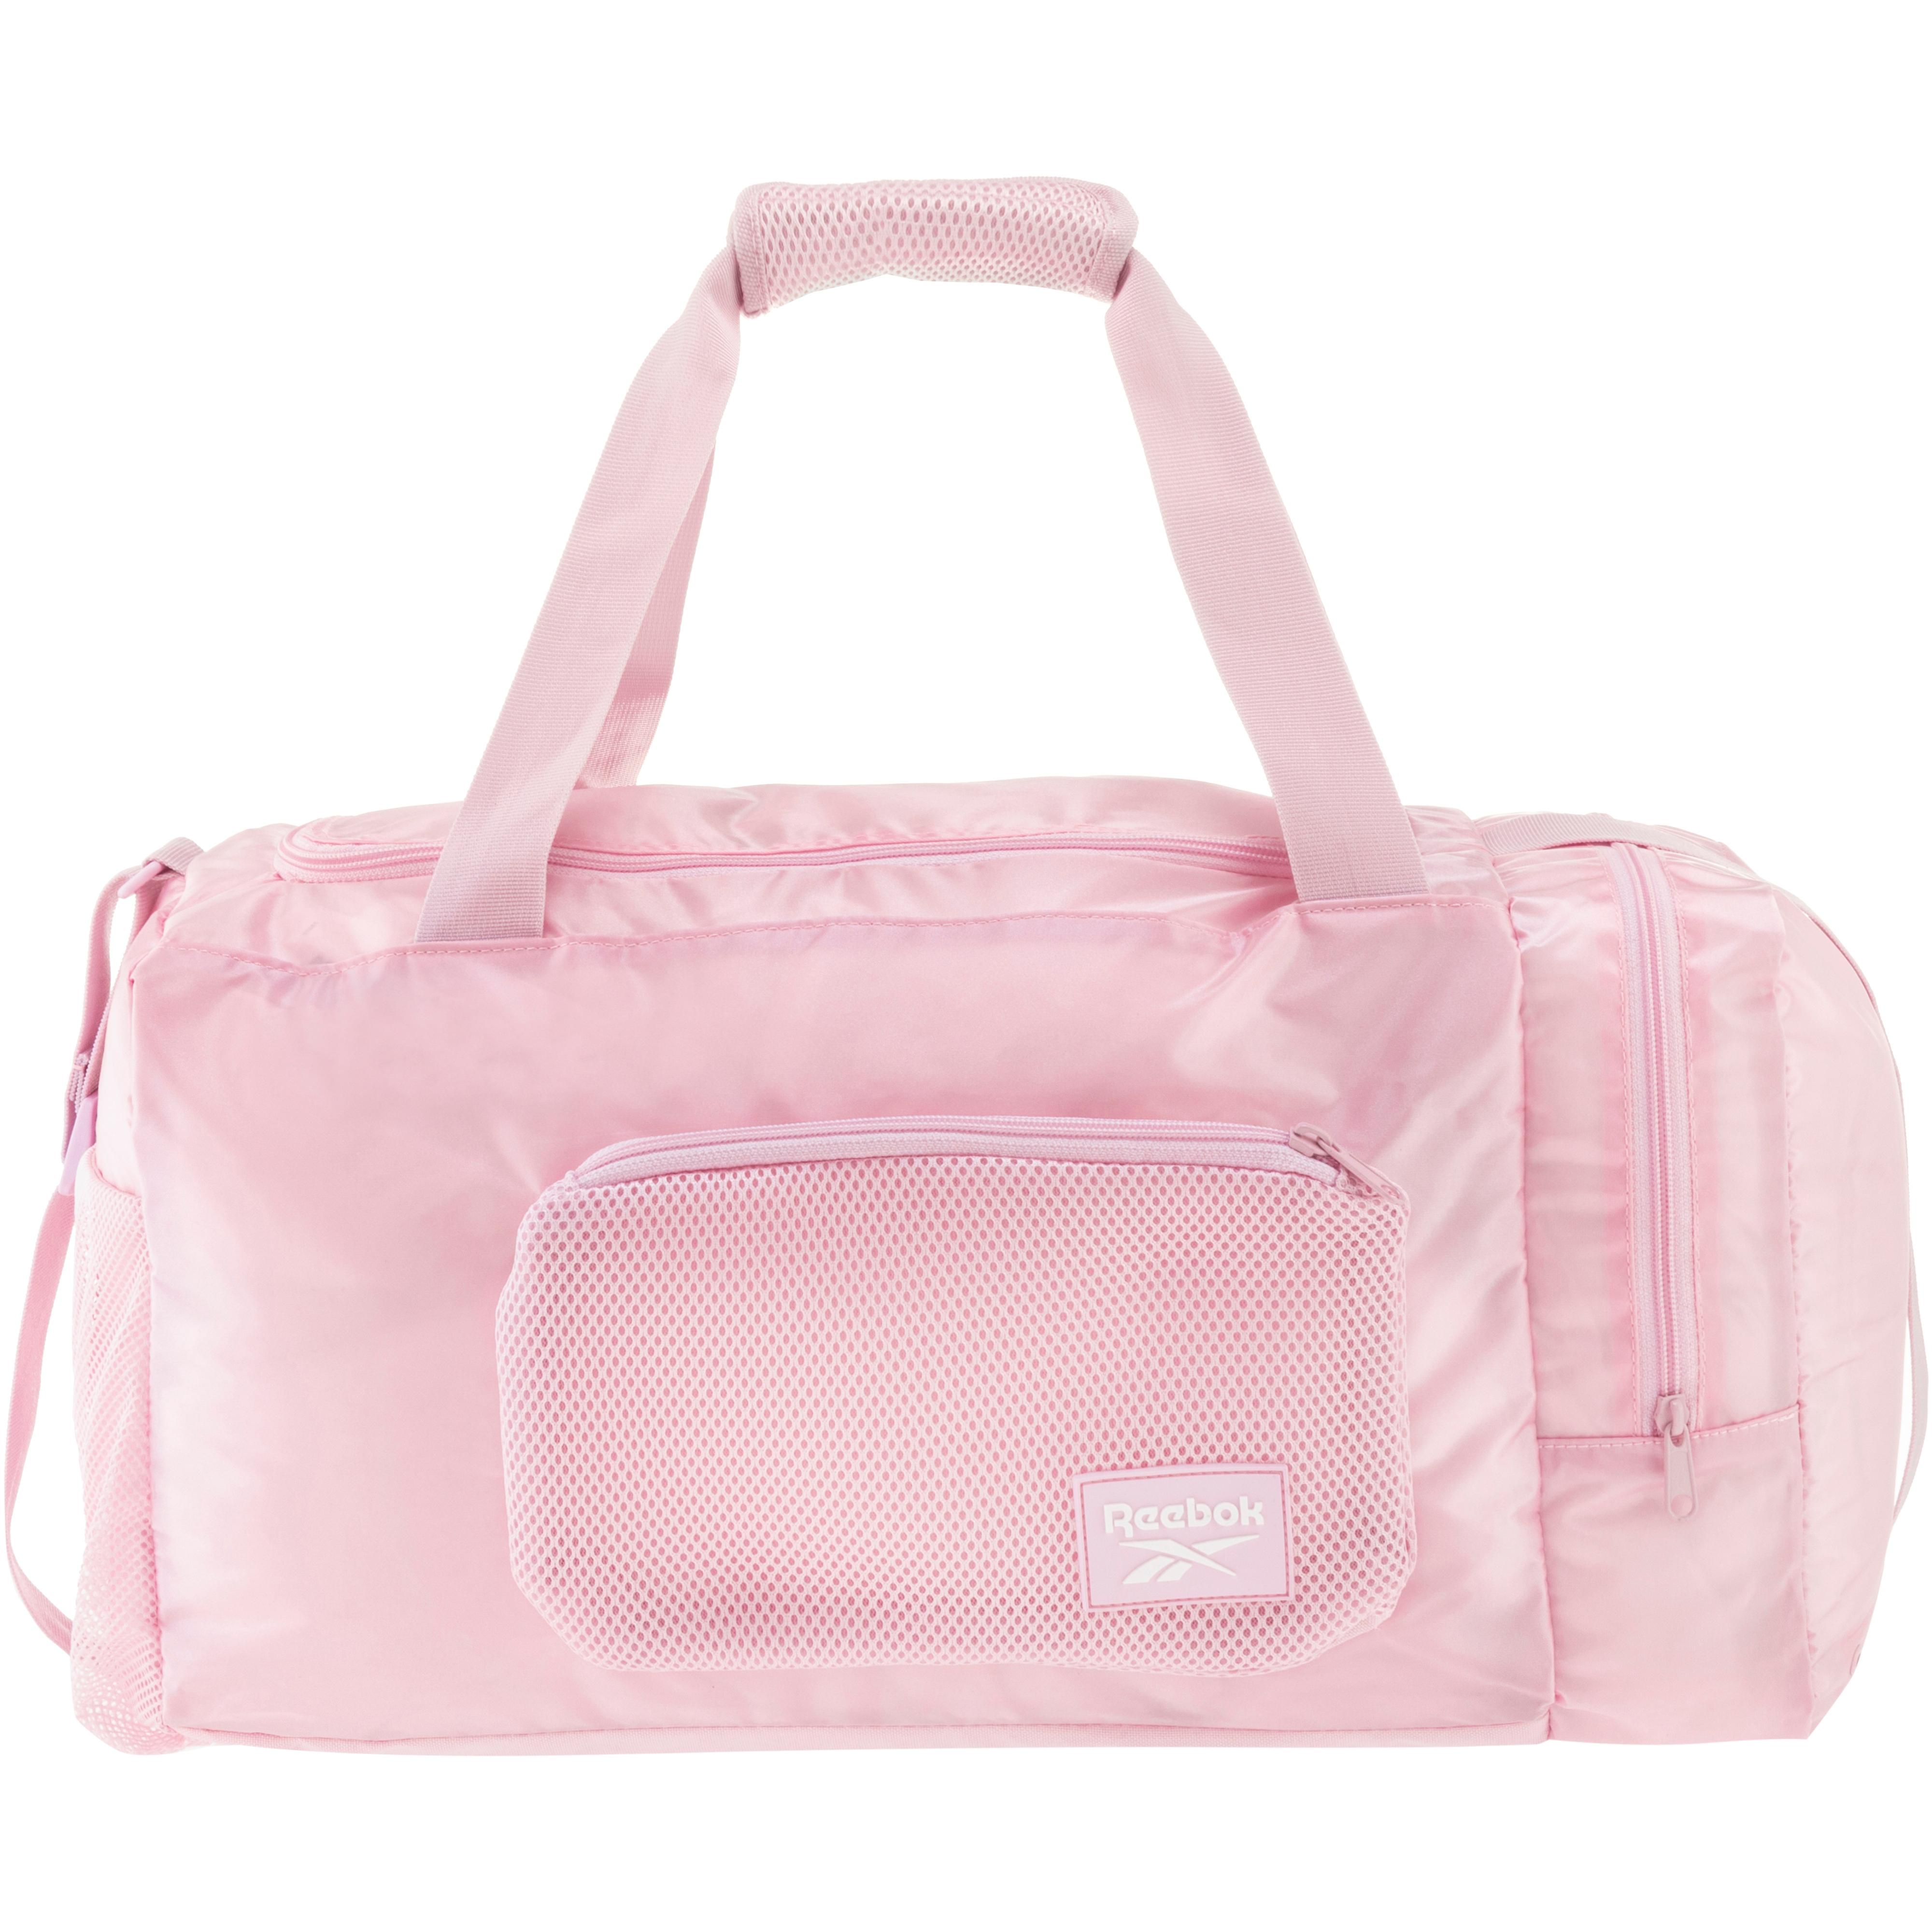 Reebok Sporttasche Damen pixel pink im Online Shop von SportScheck kaufen